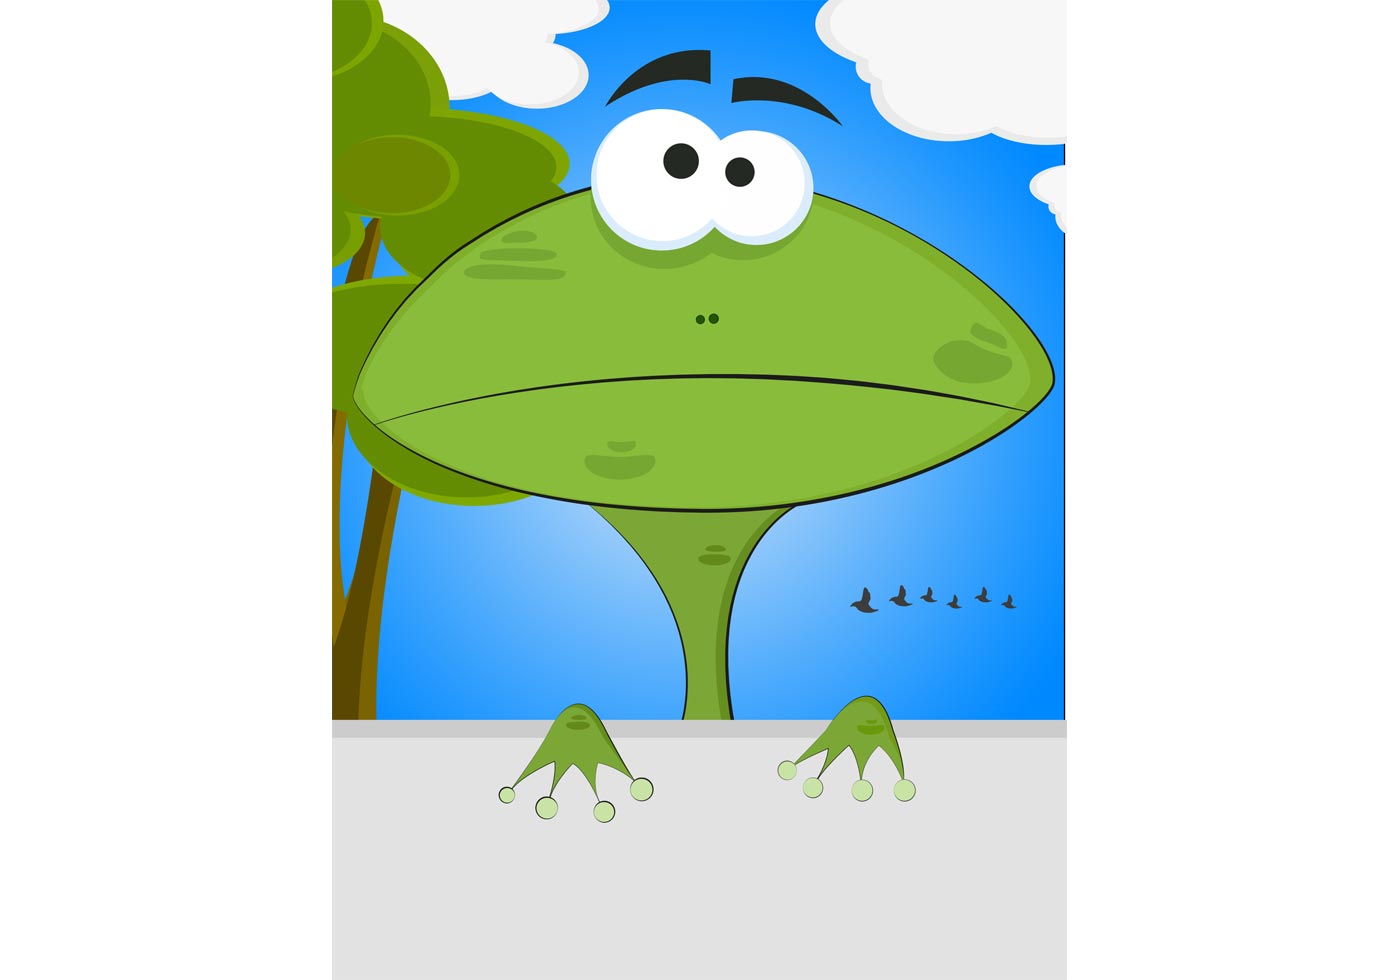 Download Cartoon Frog Vector | Free Vector Art at Vecteezy!